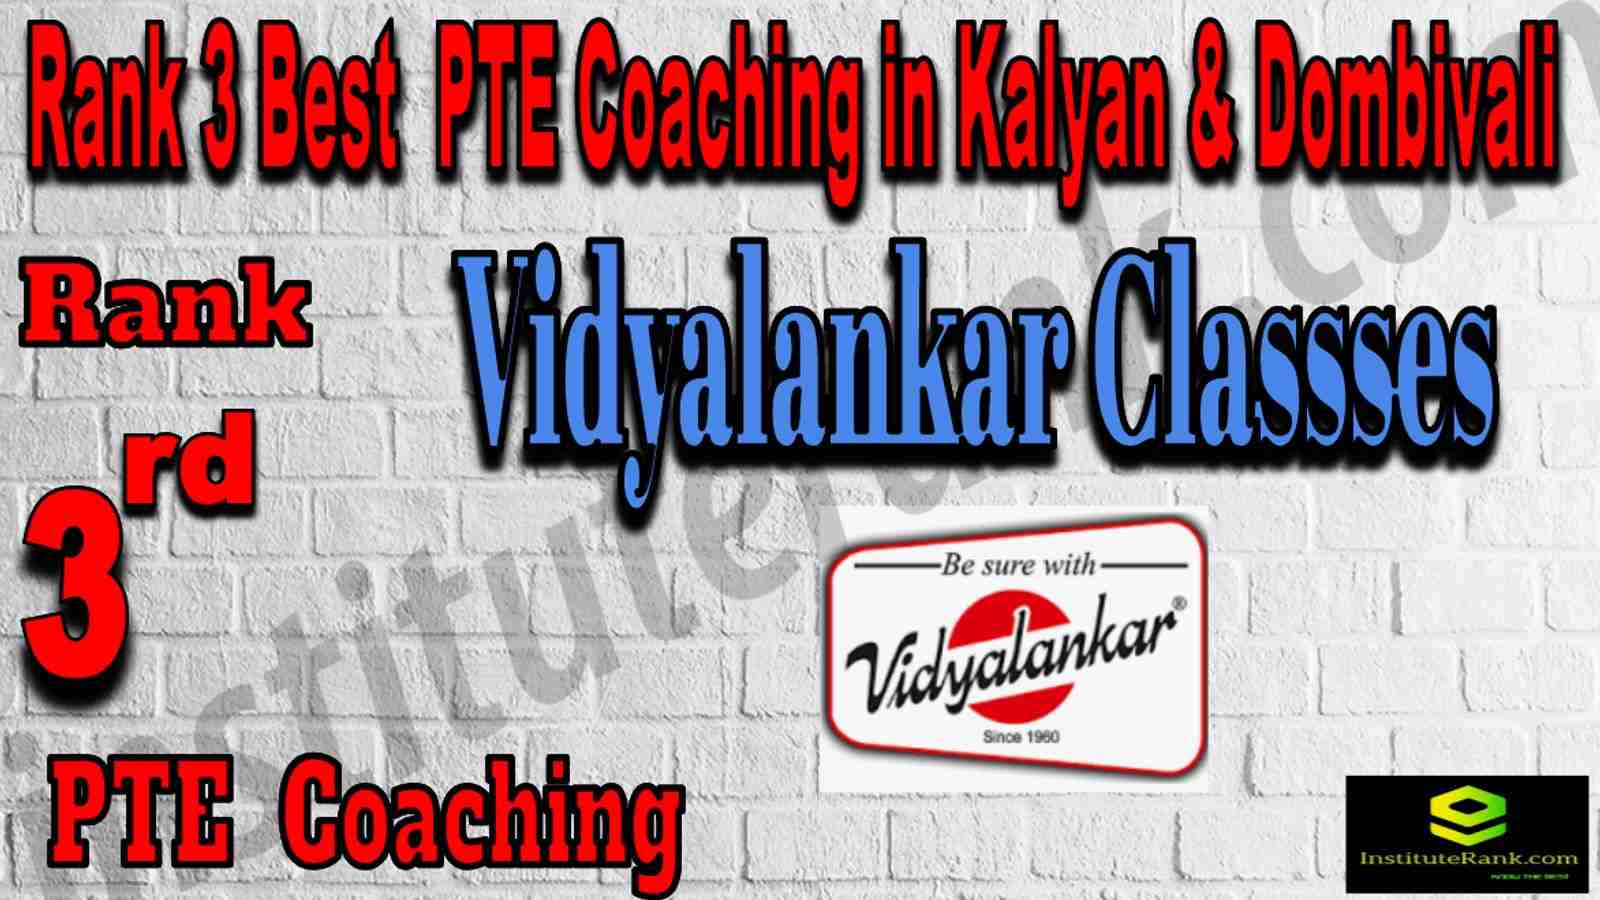 Rank 3 Best PTE Coaching in Kalyan & Dombivali